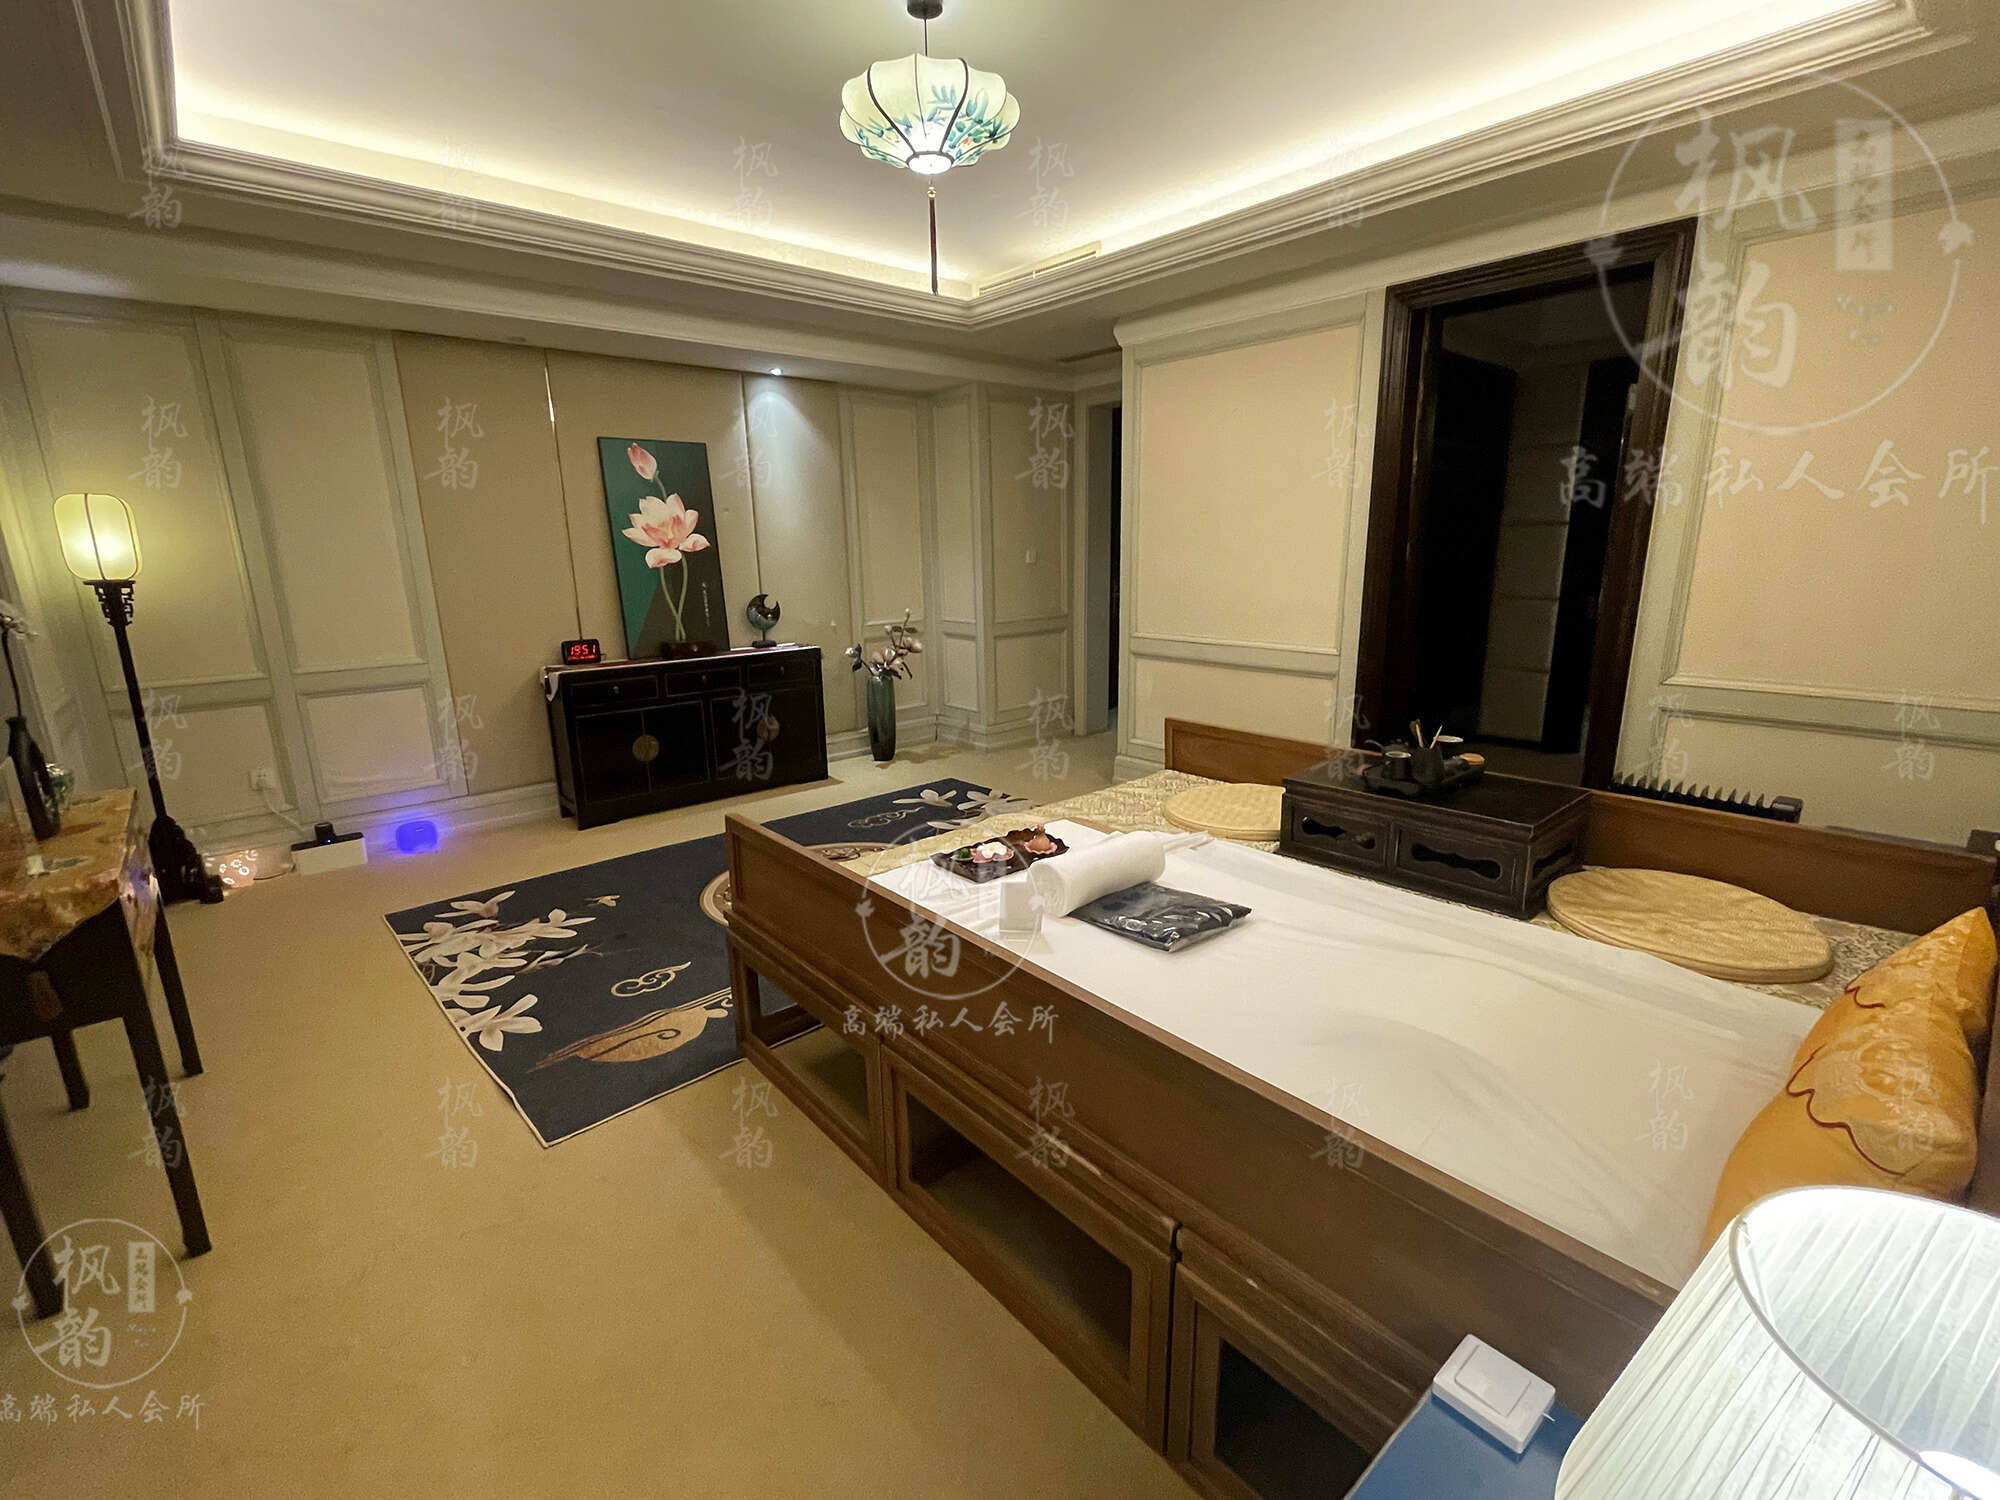 莆田天津渔阳鼓楼人气优选沐足会馆房间也很干净，舒适的spa体验